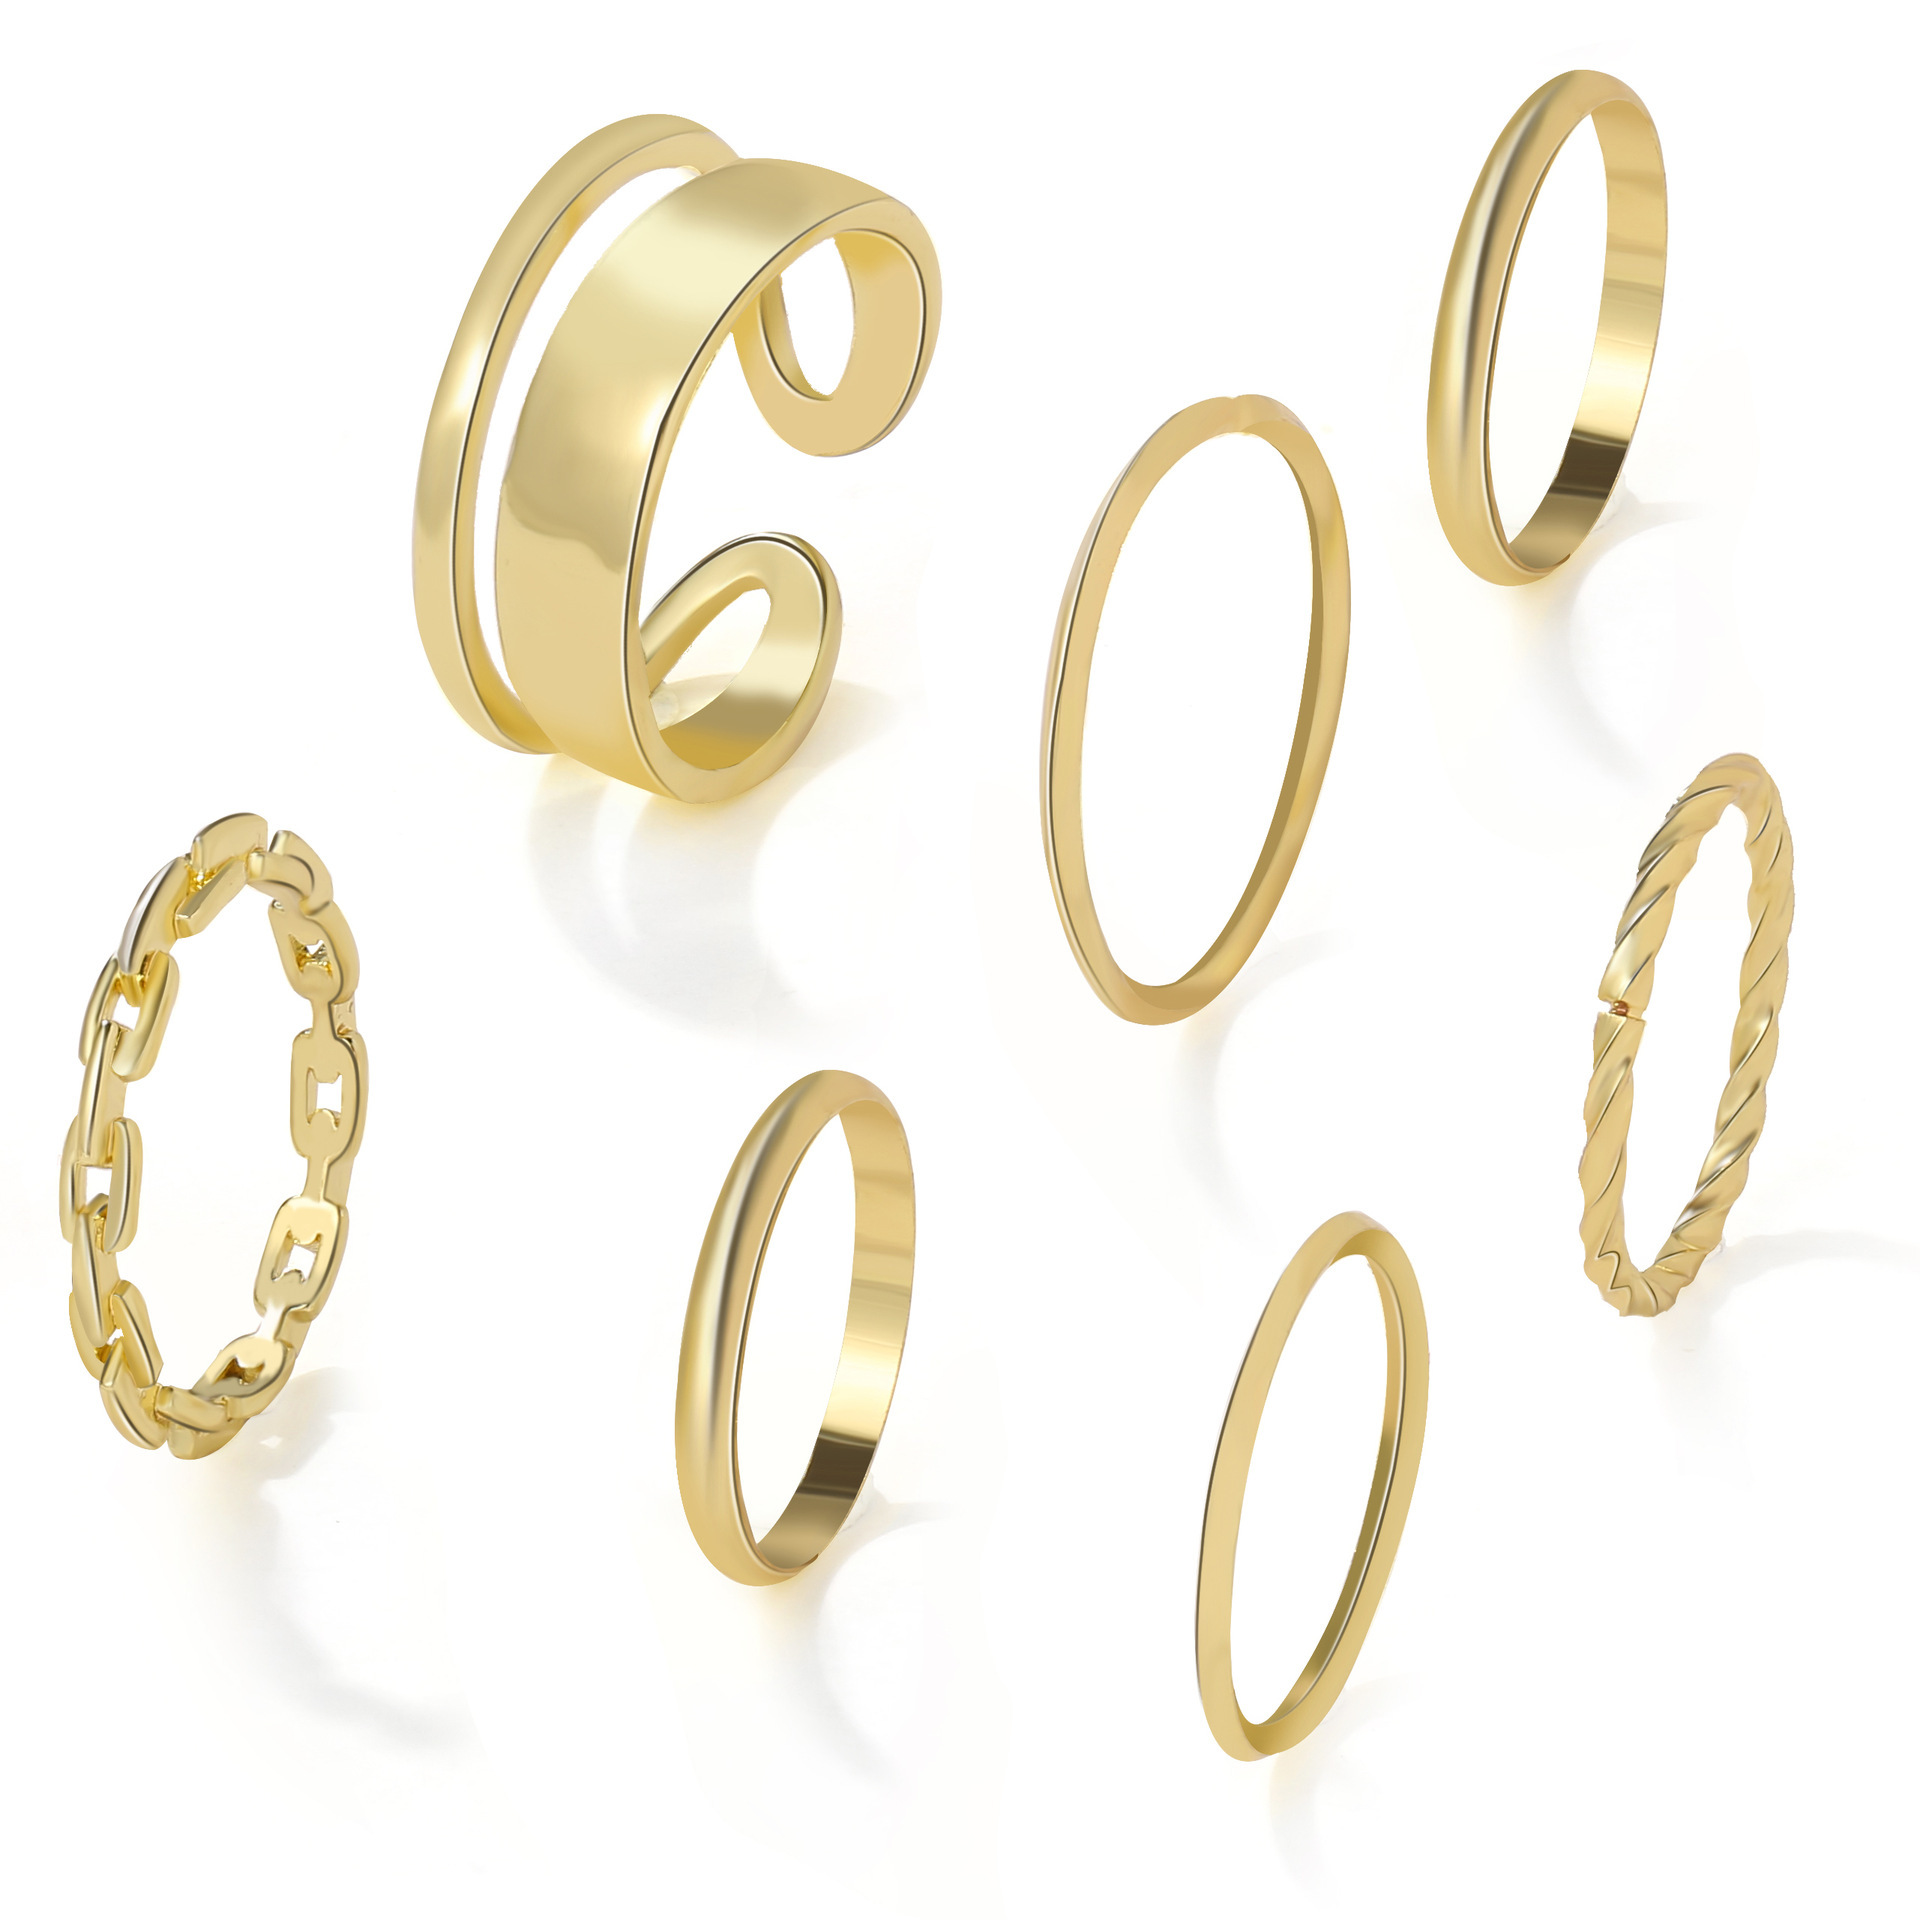 欧美跨境热销金属关节戒指创意简约ins风戒指组合套装7件套rings